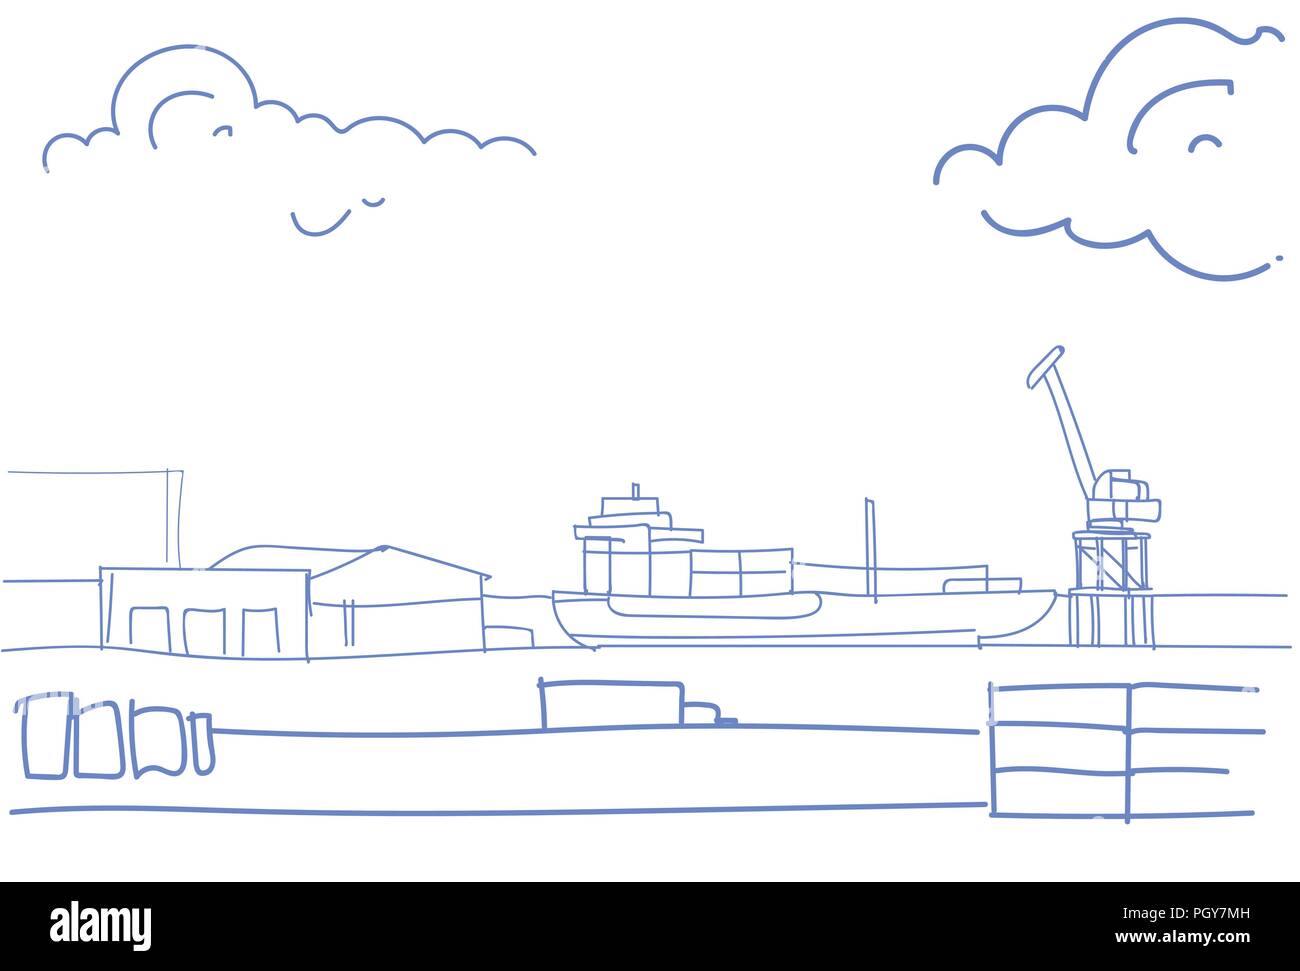 Industriale di porto di mare merci nave gru di erogazione di acqua il concetto di trasporto magazzino spedizioni dock schizzo doodle orizzontale Illustrazione Vettoriale